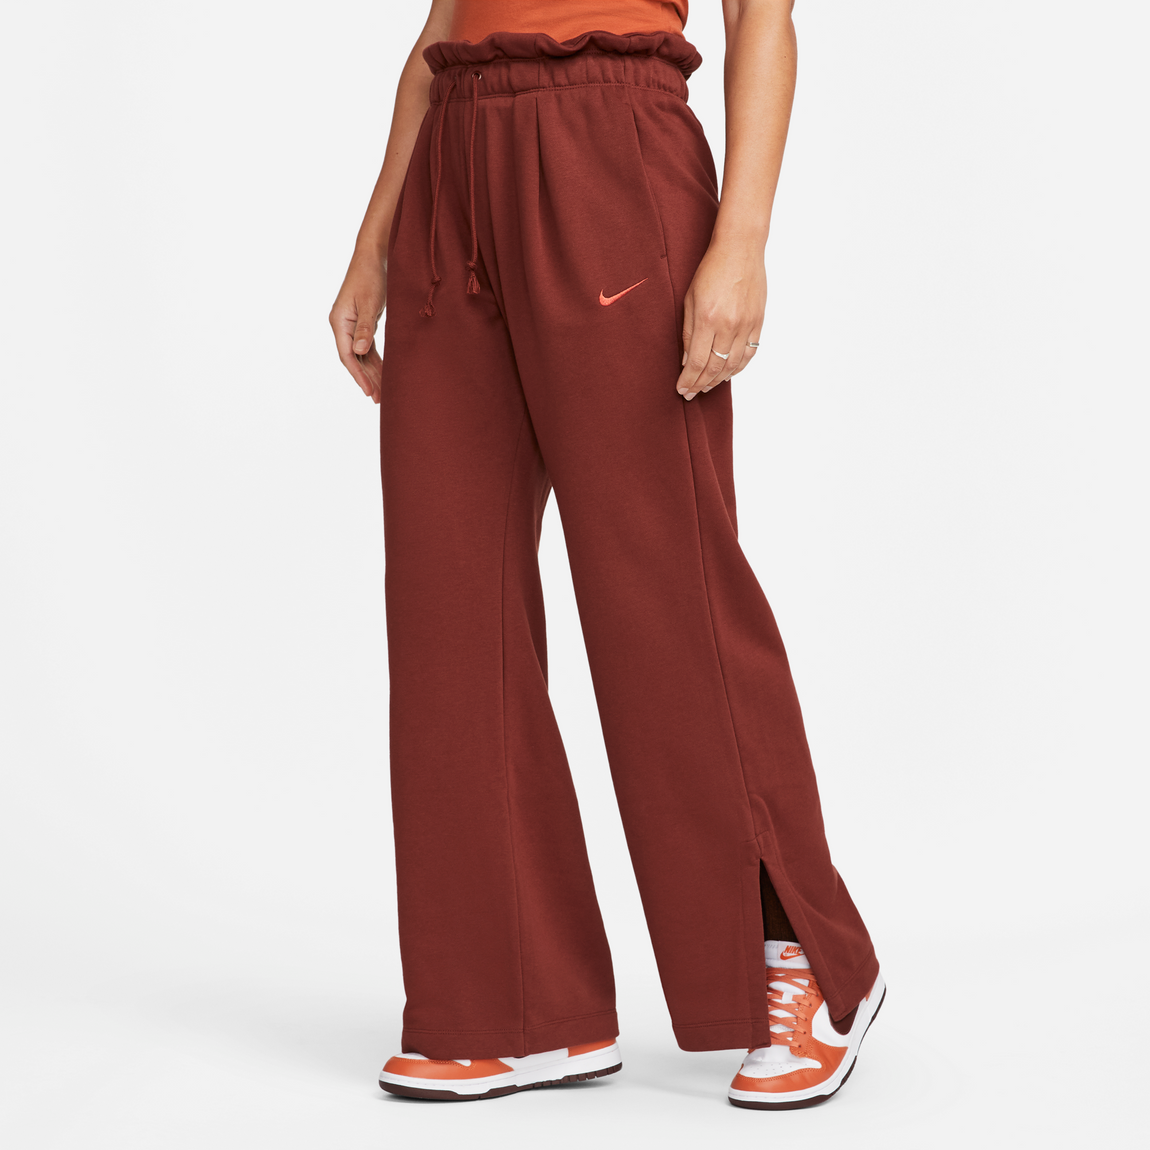 Nike Sportswear Women's Everyday Modern Pants (Oxen Brown/Cinnabar) - Nike Sportswear Women's Everyday Modern Pants (Oxen Brown/Cinnabar) - 